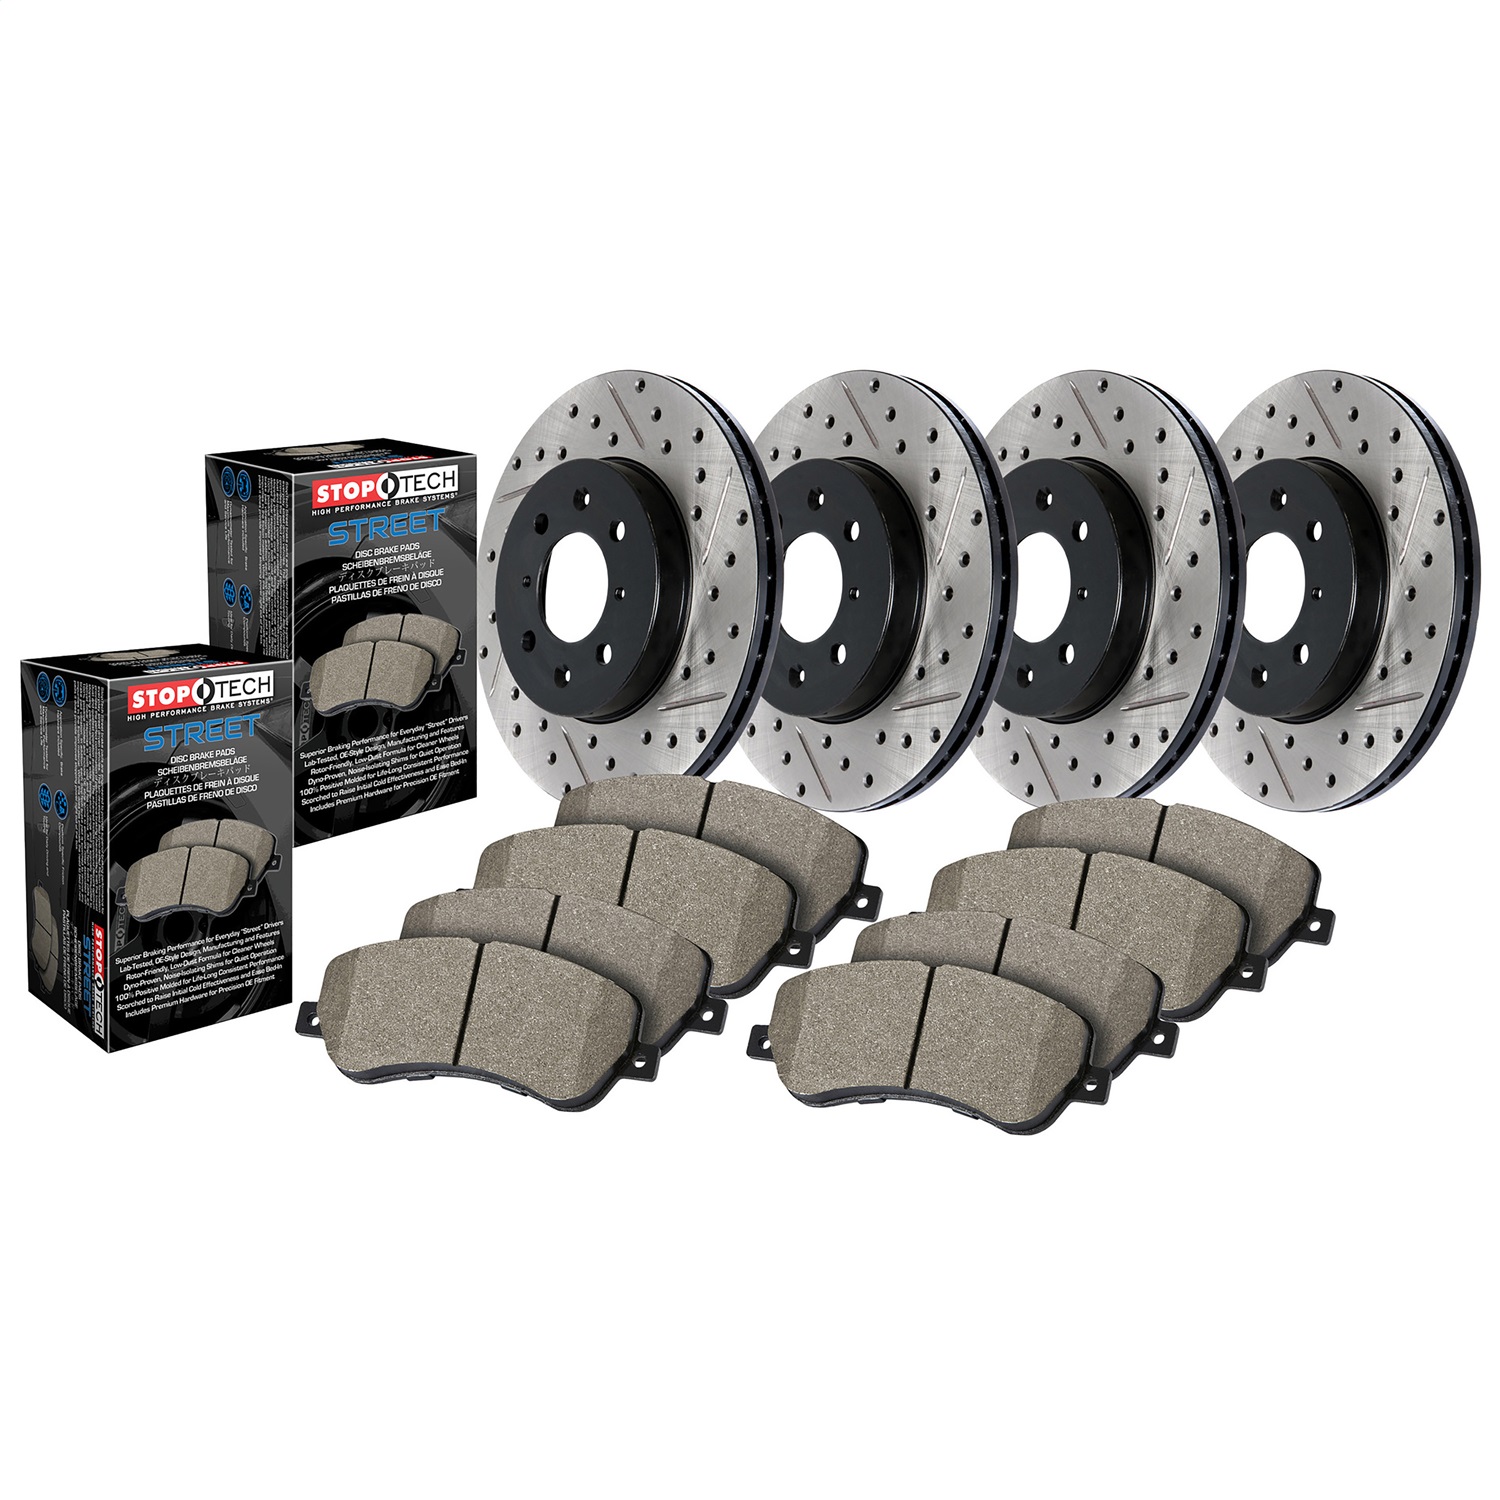 StopTech 935.66047 Disc Brake Upgrade Kit